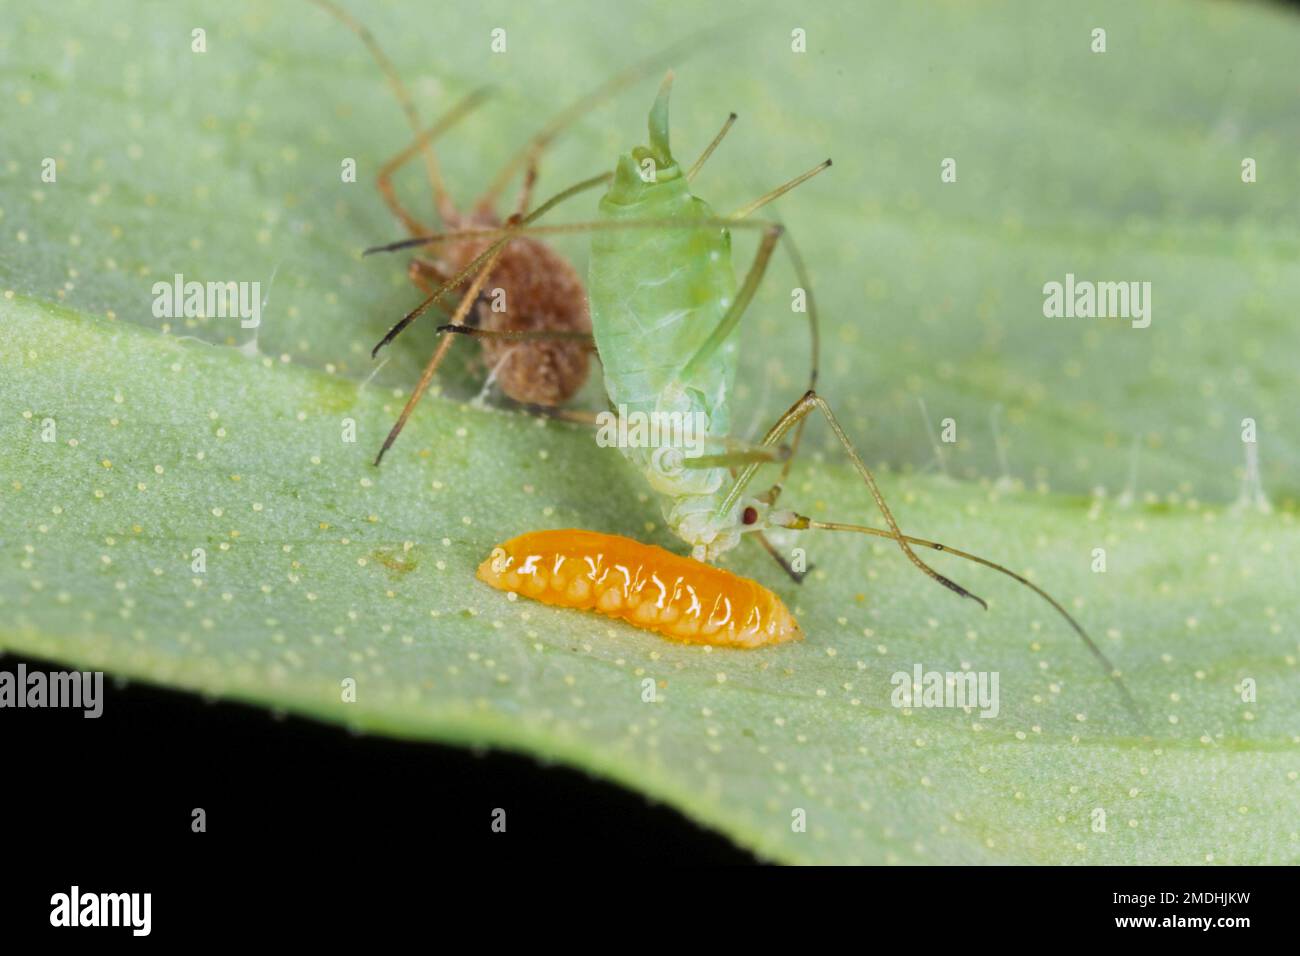 La larve d'un Aphidoletes aphidimyza (communément appelé mige pucidique) se nourrissant de l'Acyrthosiphon pisum vert communément appelé puceron de pois Banque D'Images